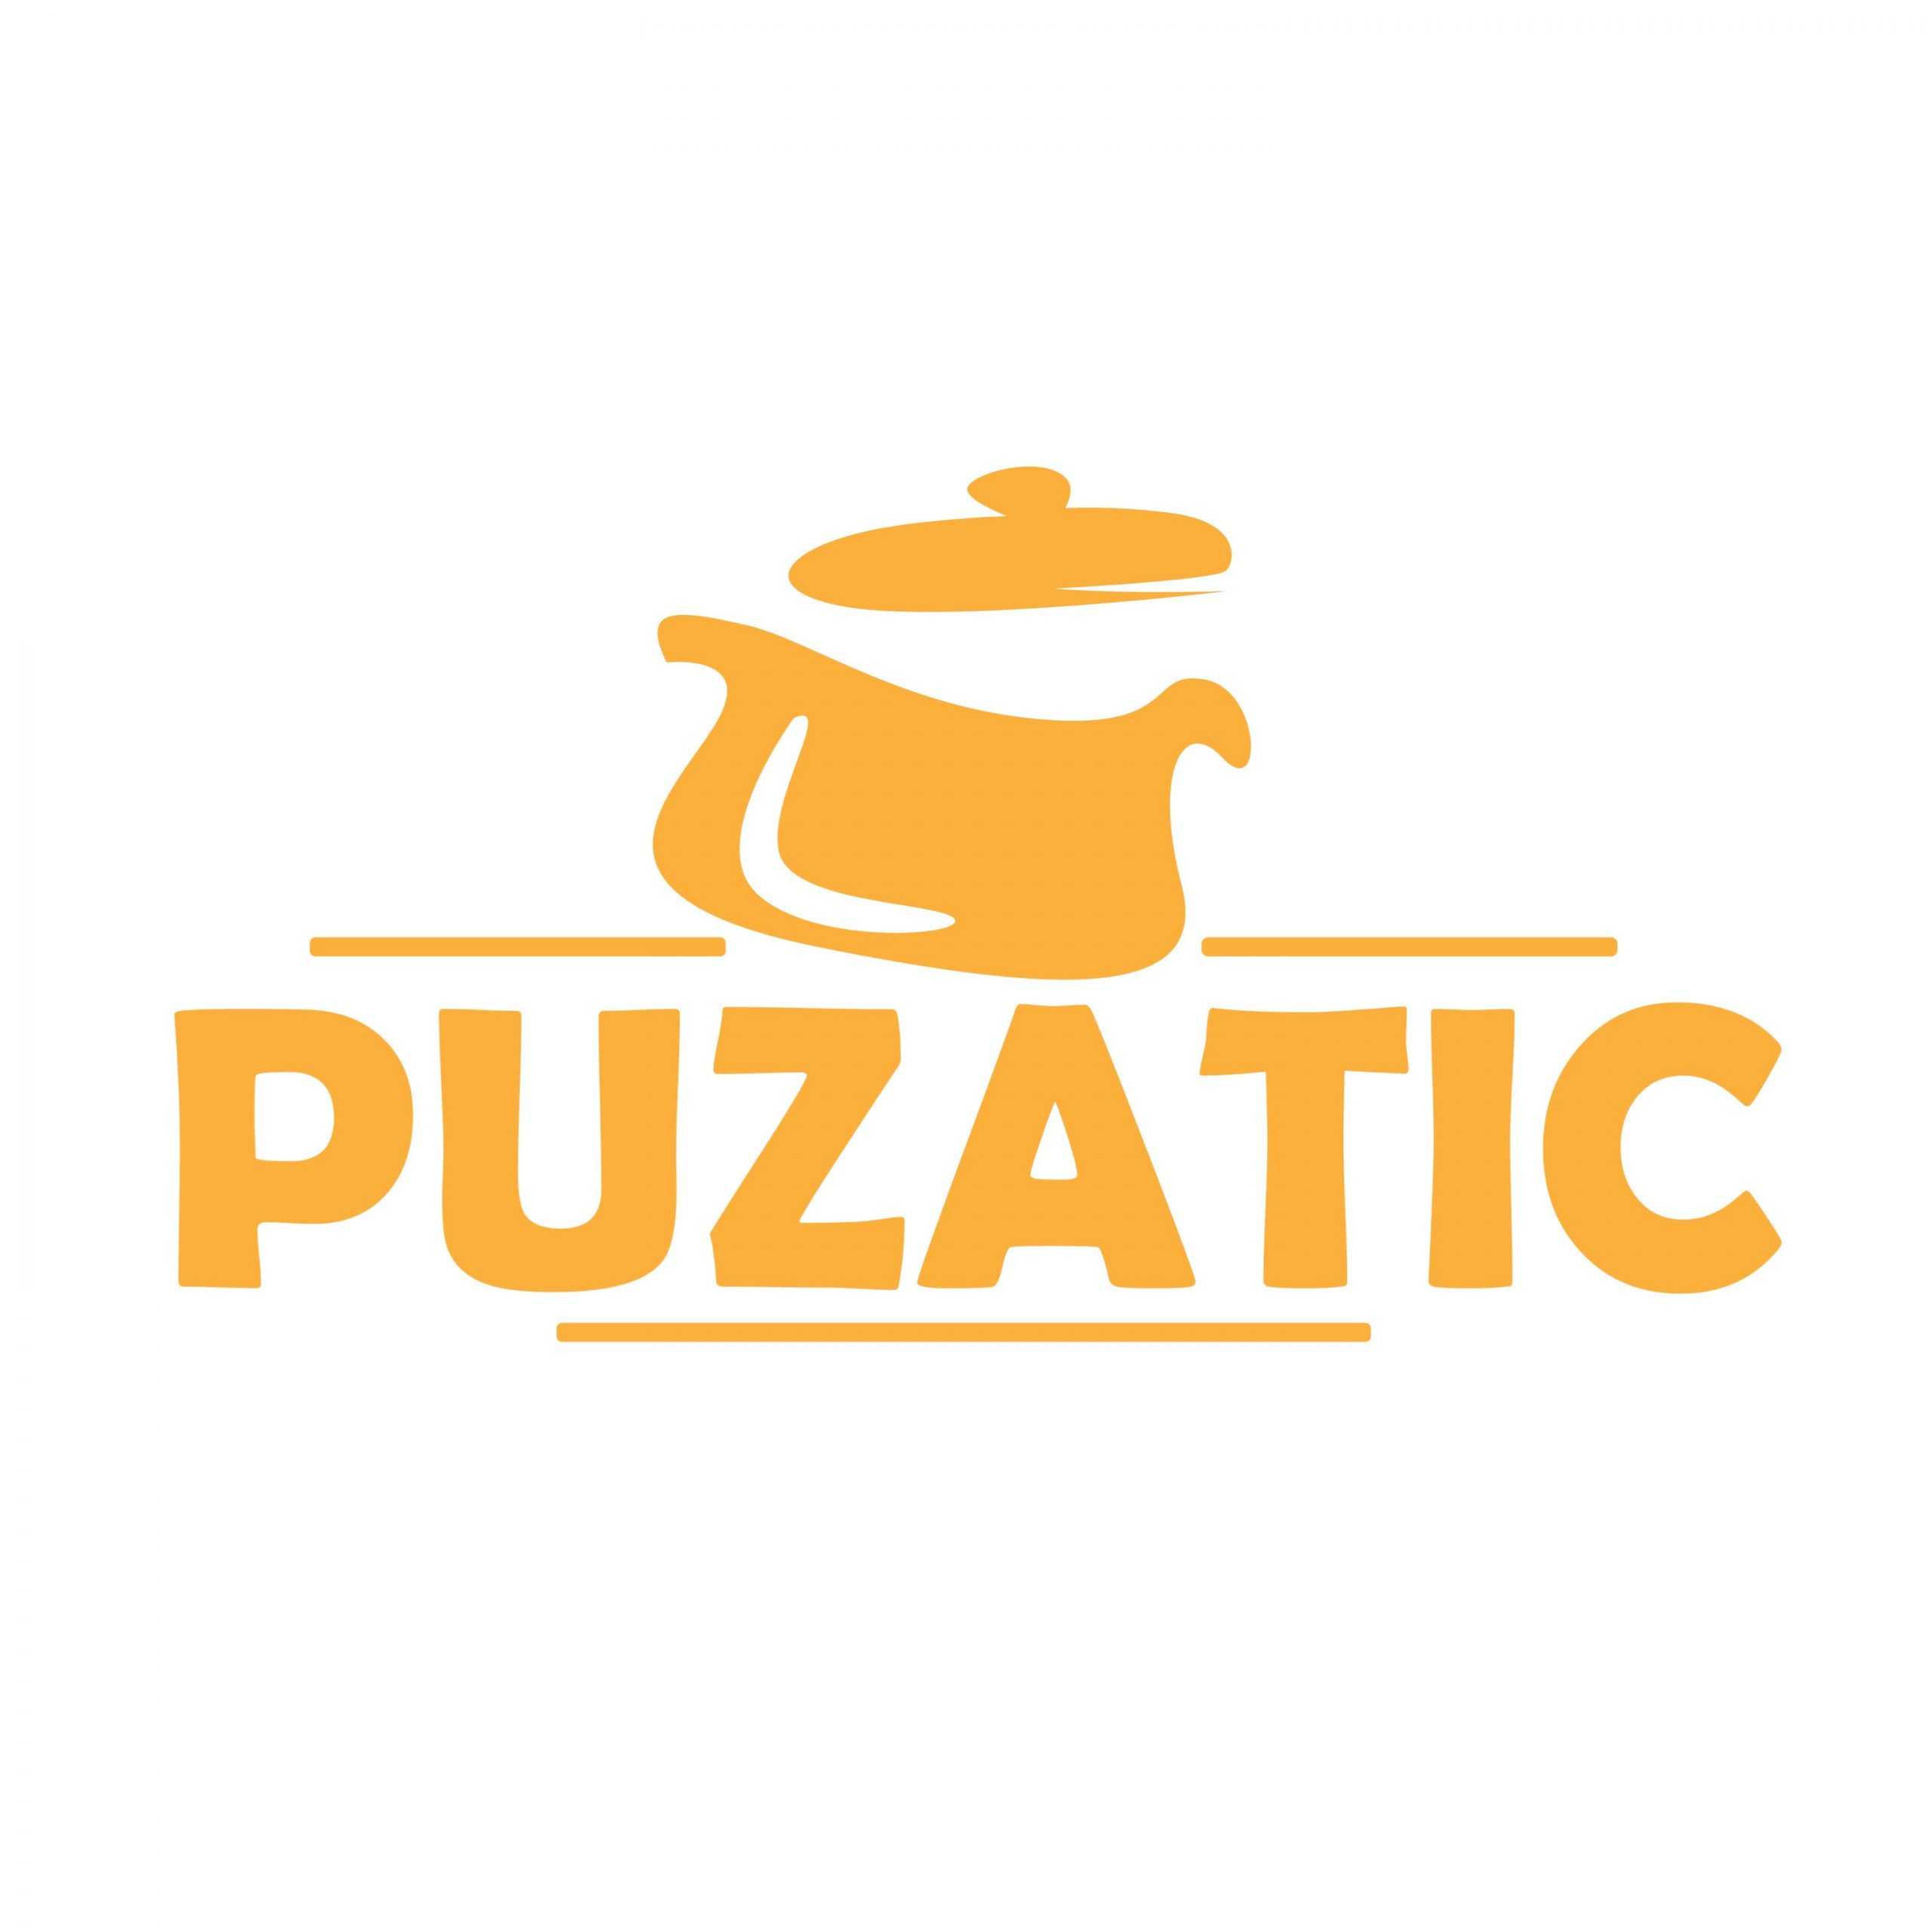 Puzatic - Coming Soon in UAE